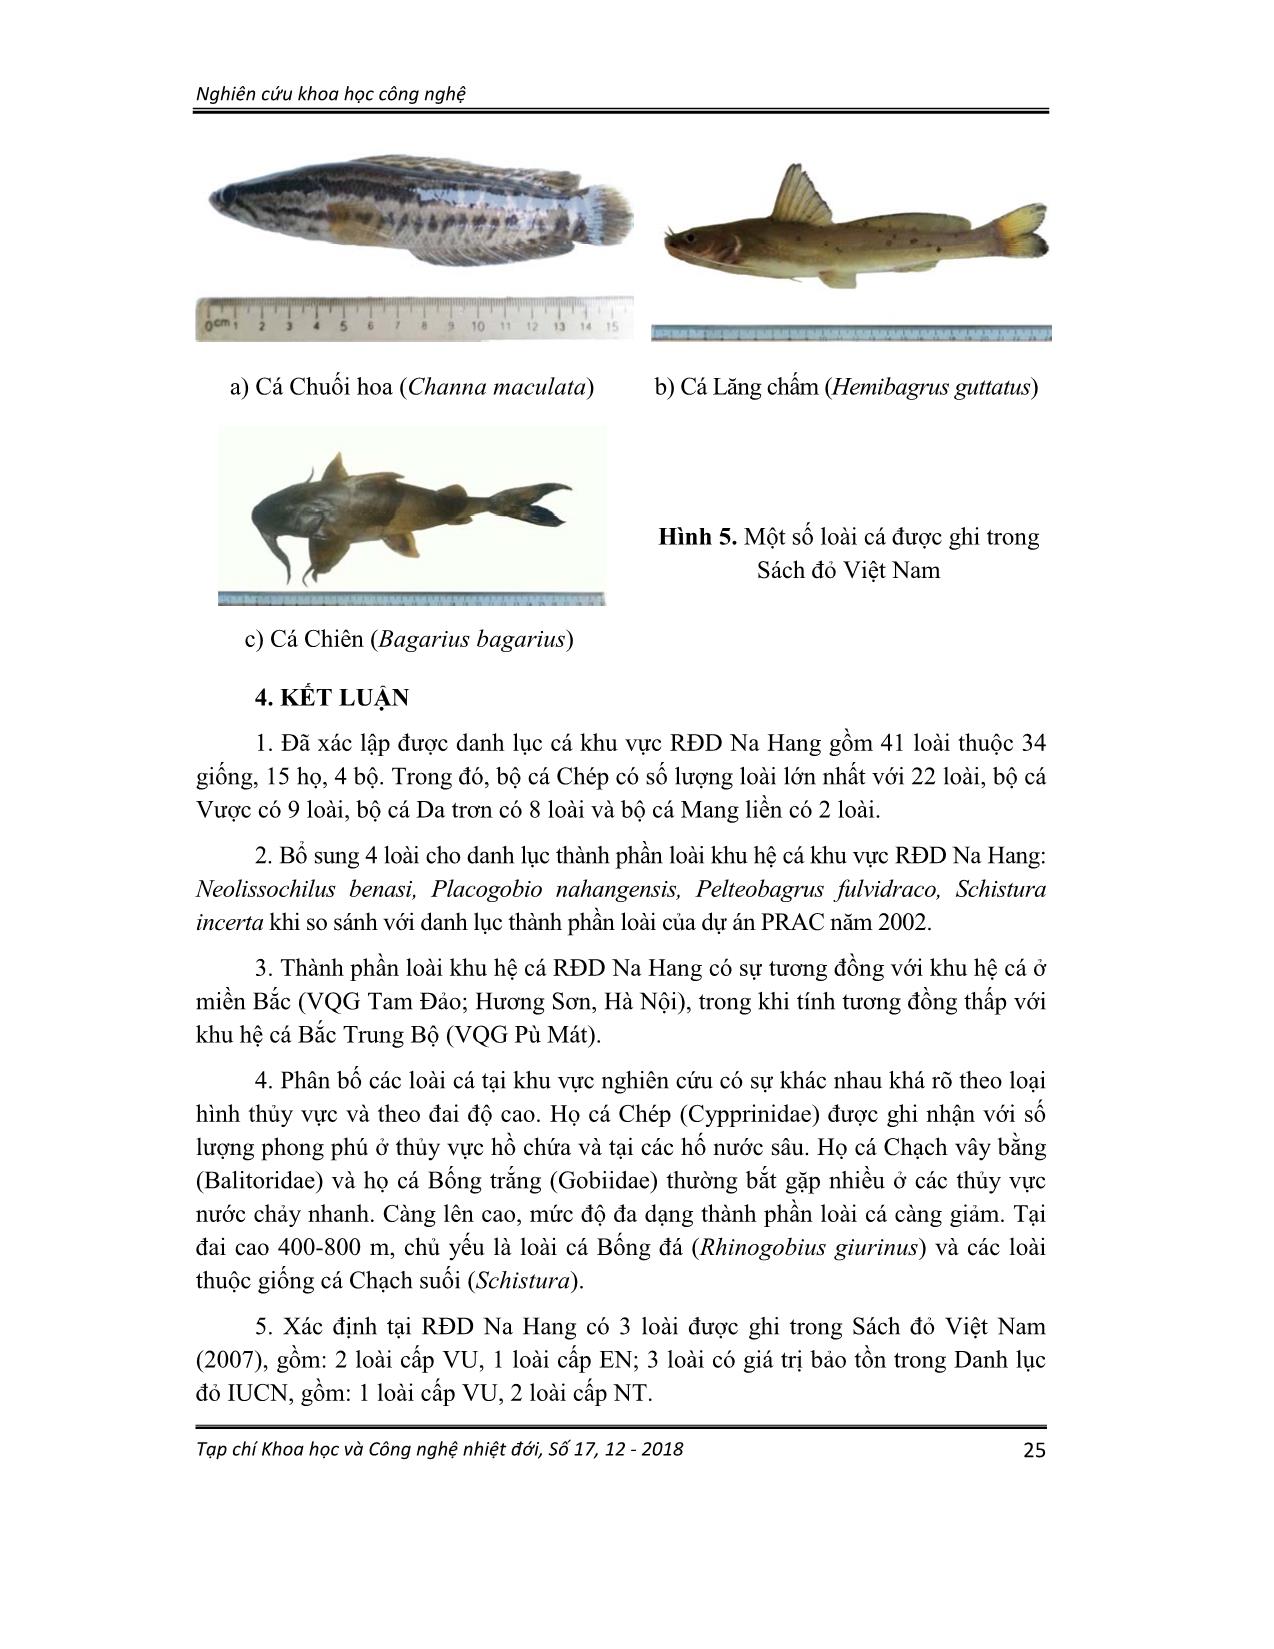 Thành phần loài và phân bố của cá trong các thủy vực rừng đặc dụng Na hang, tỉnh Tuyên Quang trang 10